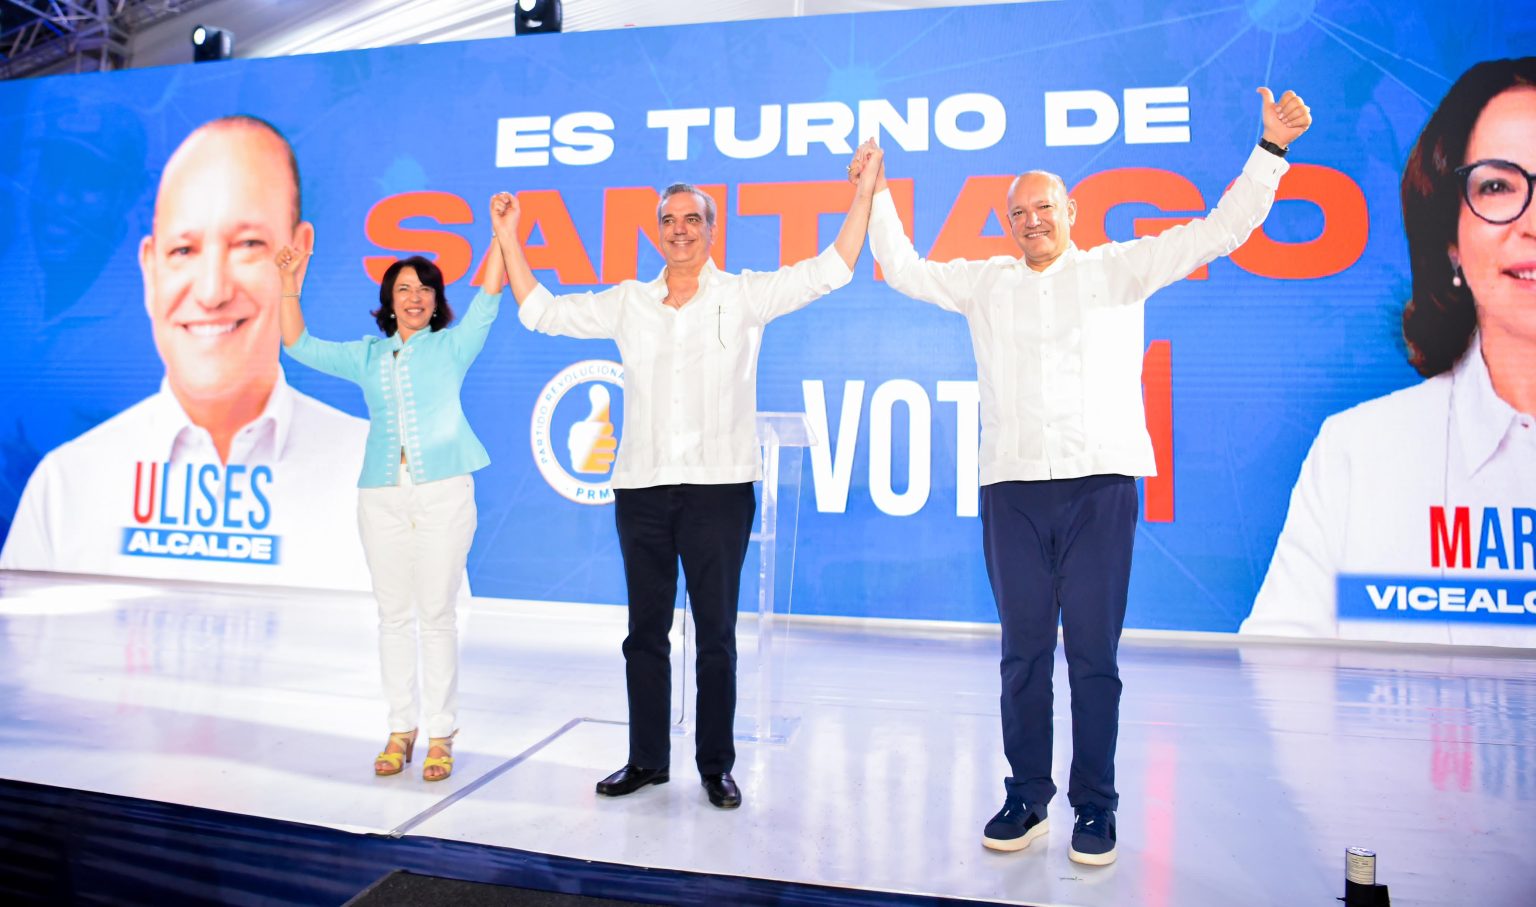 Ulises Rodriguez sera el proximo alcalde de Santiago